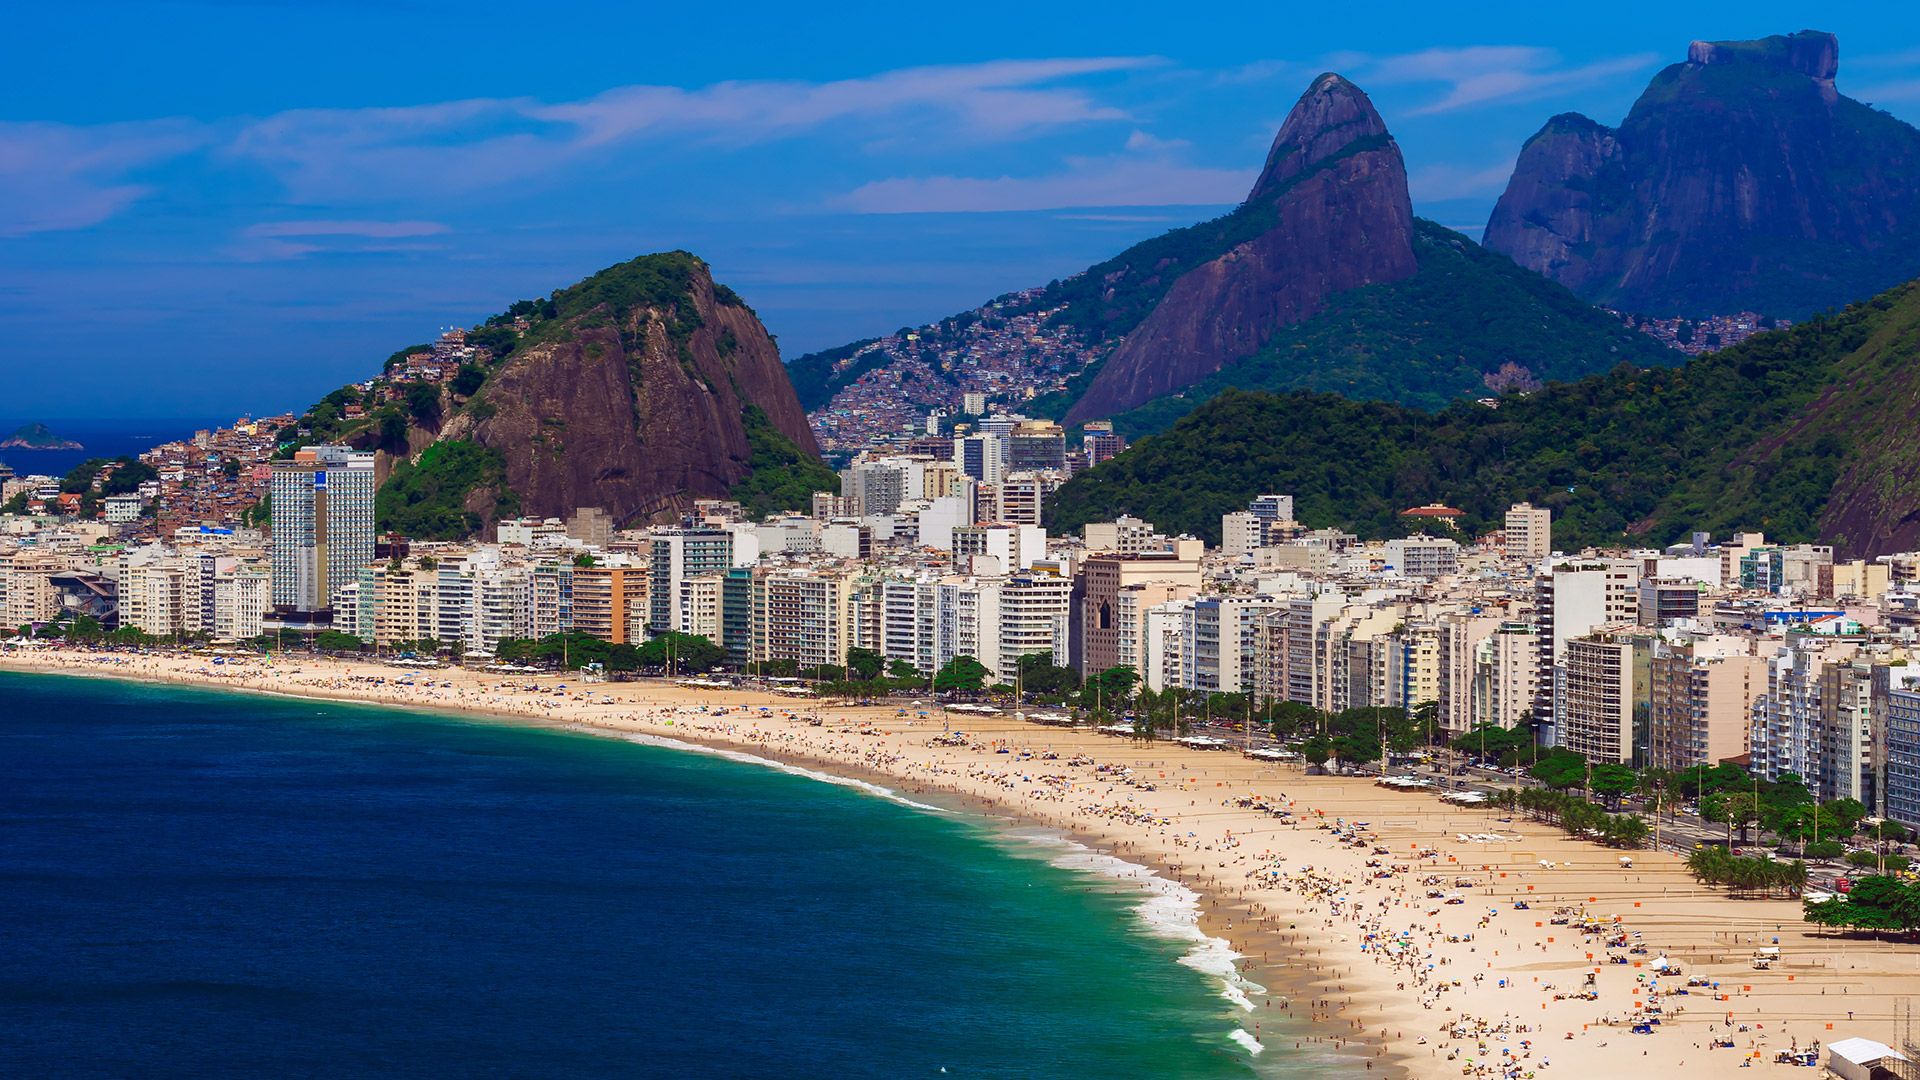 Circuit de grup - Rio de Janeiro, 8 zile